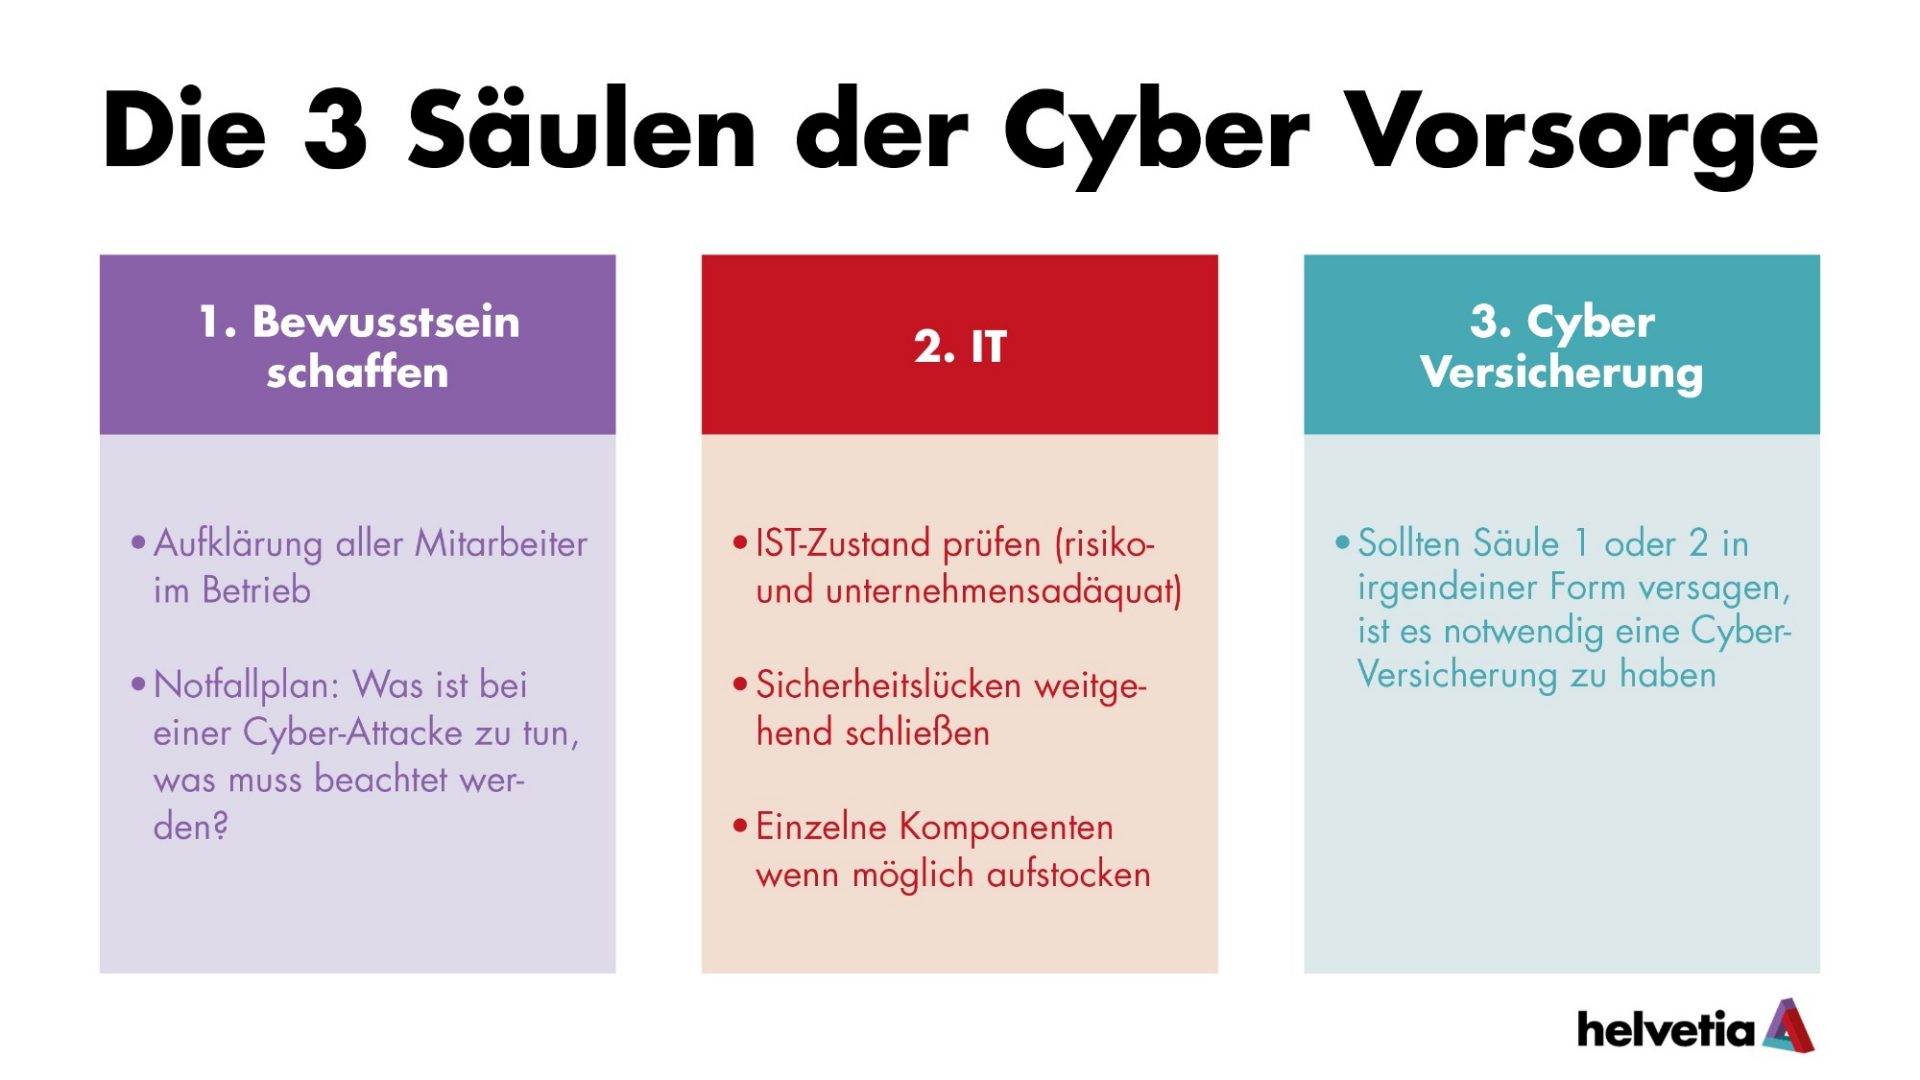 Die 3 Säulen der Cyber Vorsorge: zur Unterstützung von Unternehmen bei den Sicherheitsvorkehrungen gegen Cyber-Angriffe.